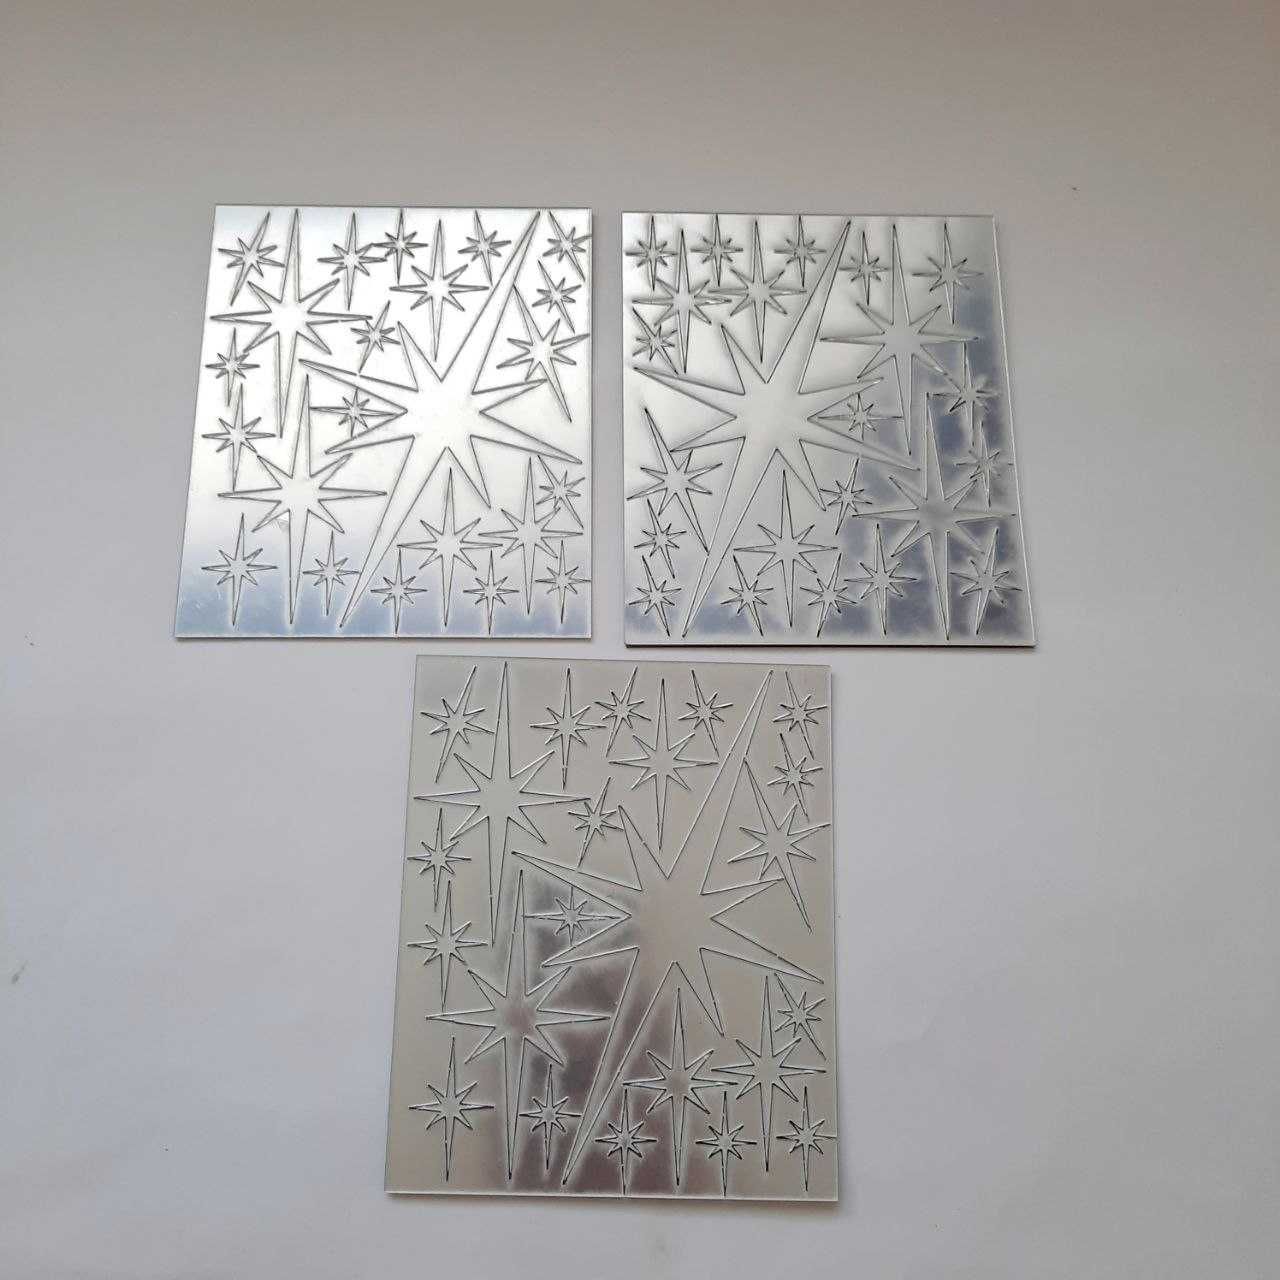 Наклейка на стену зеркальная акрил серебро Звезды набор 82 штук